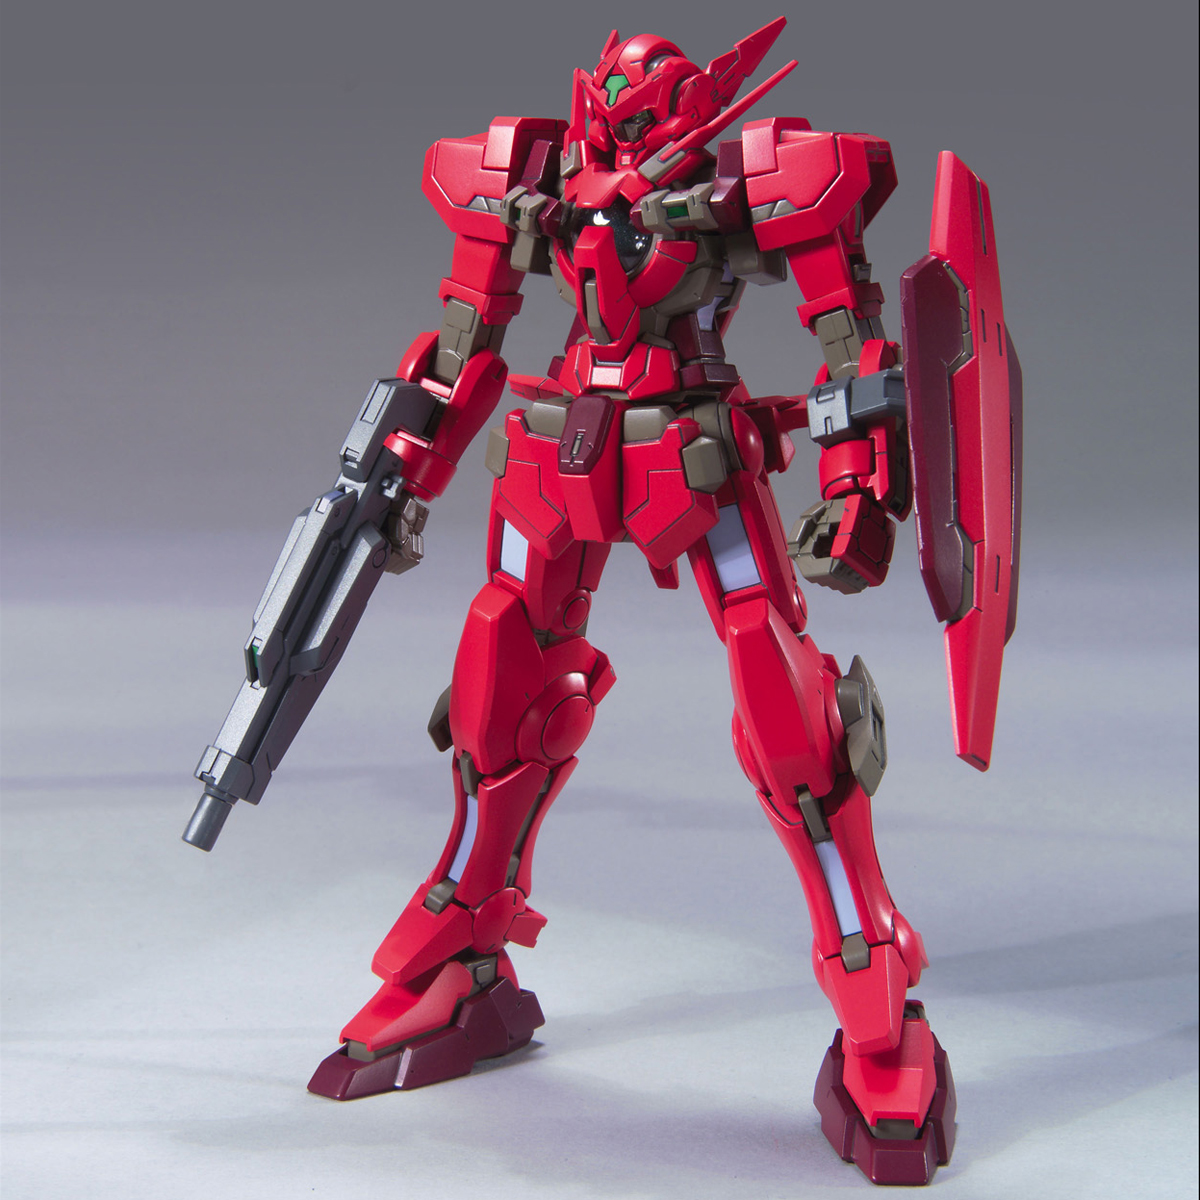 GNY-001F ガンダムアストレア TYPE-F [Gundam Astraea Type F]